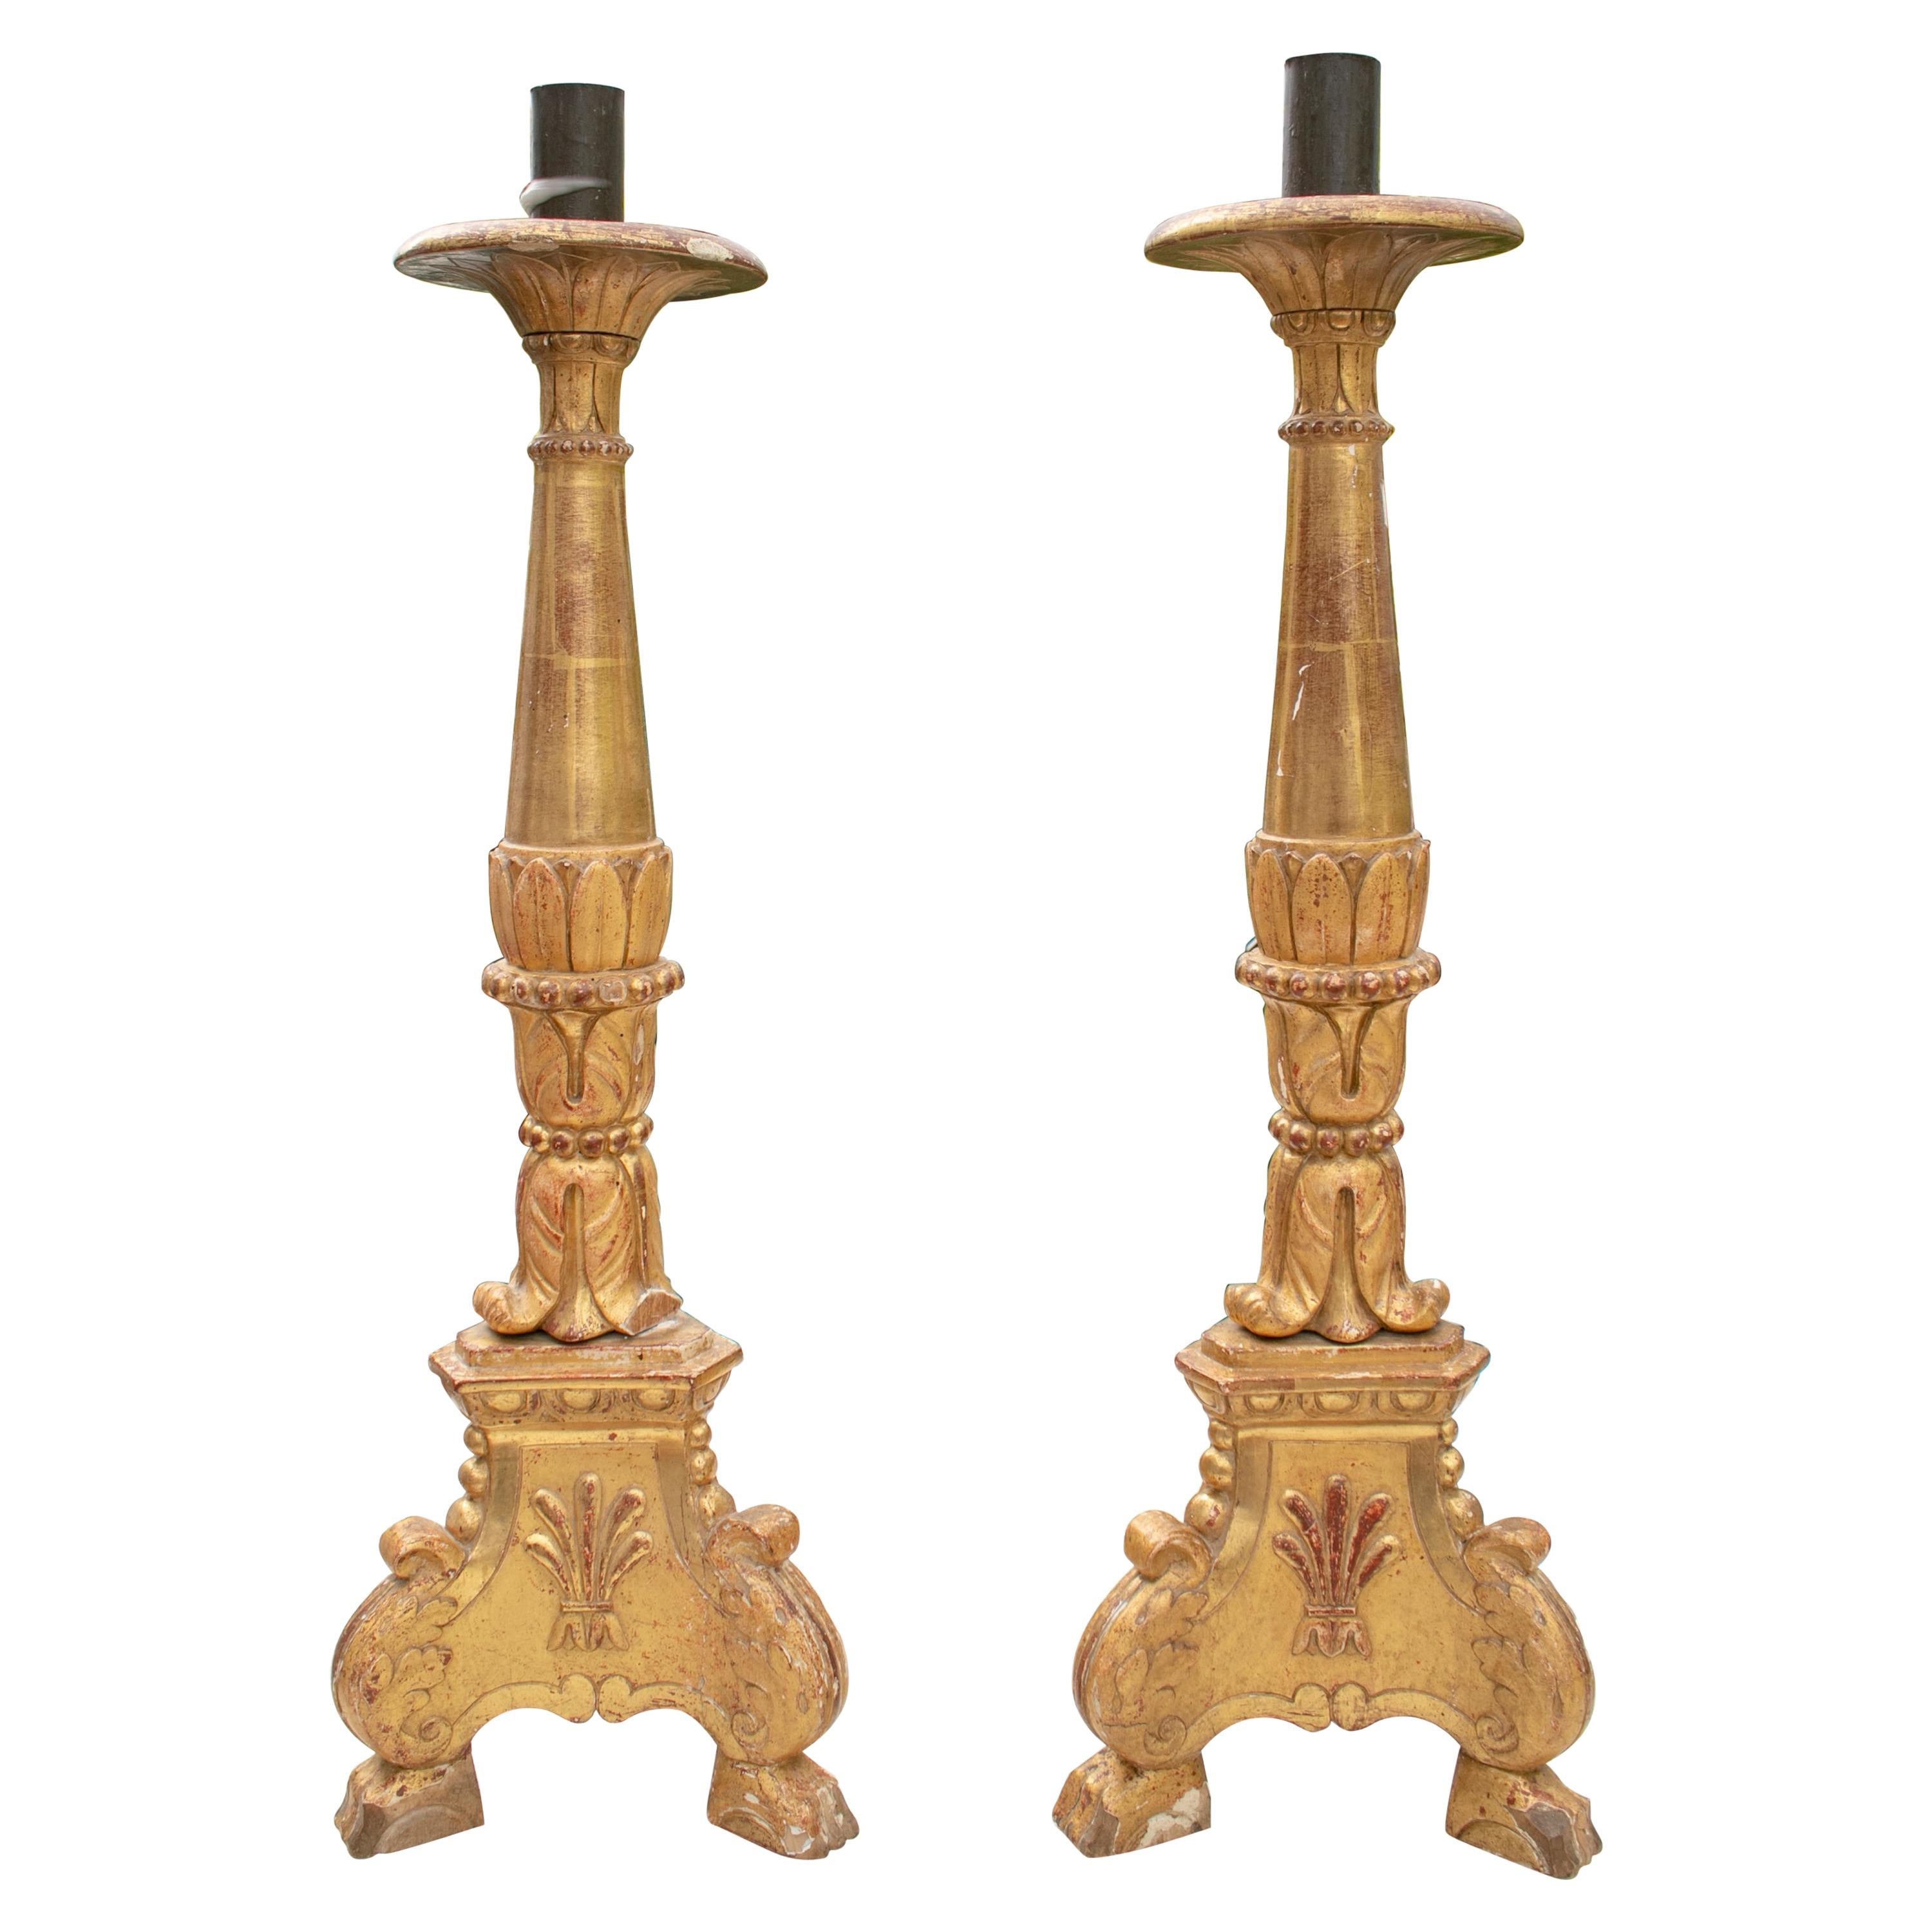 paire de chandeliers espagnols en bois doré du 18ème siècle